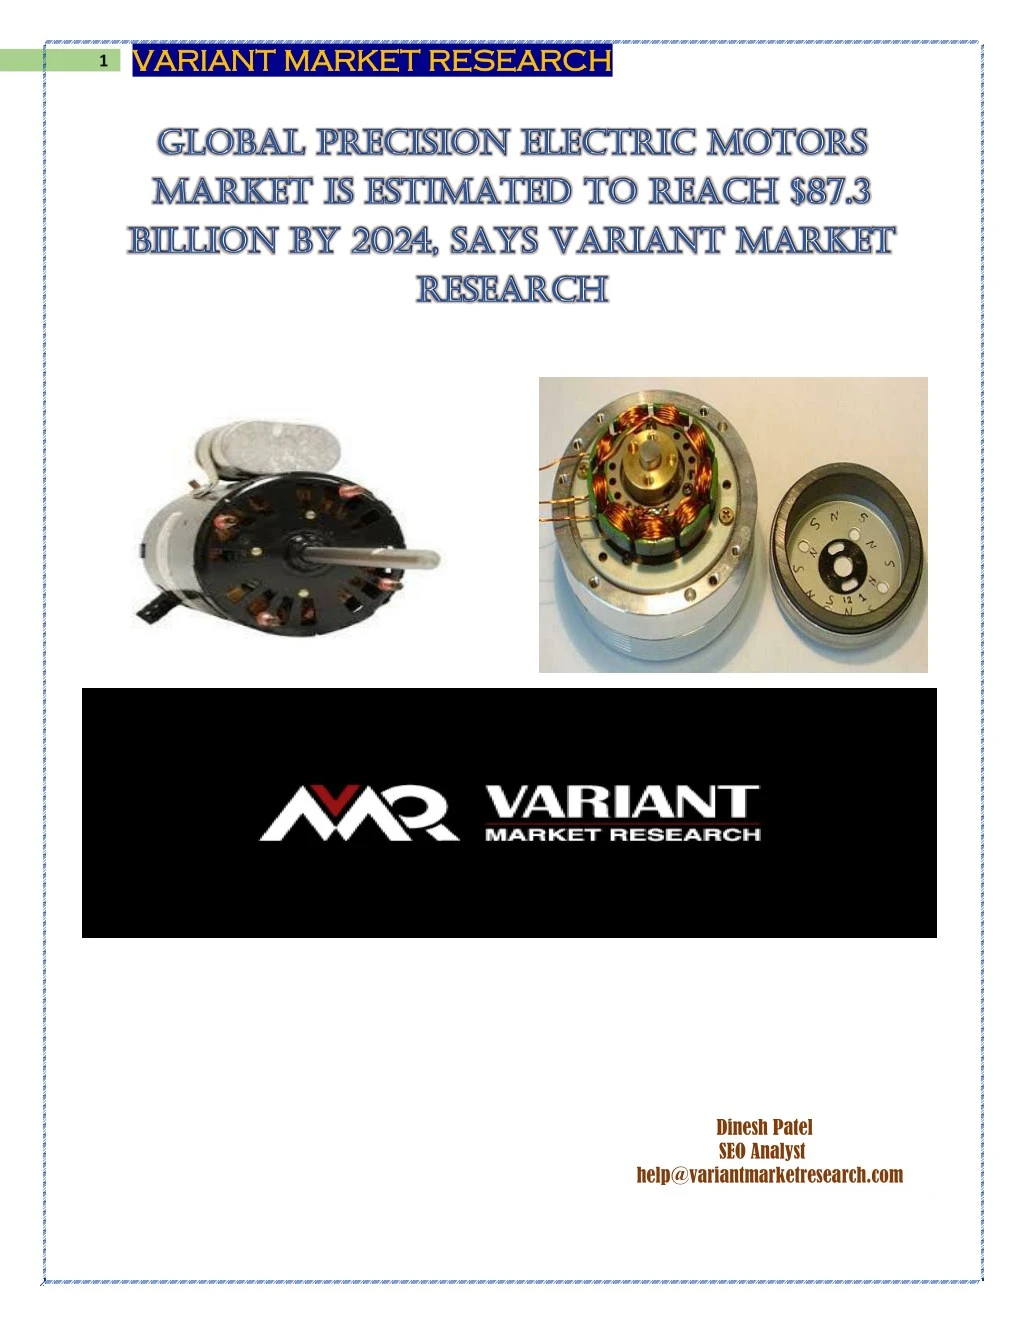 1 variant market research variant market research